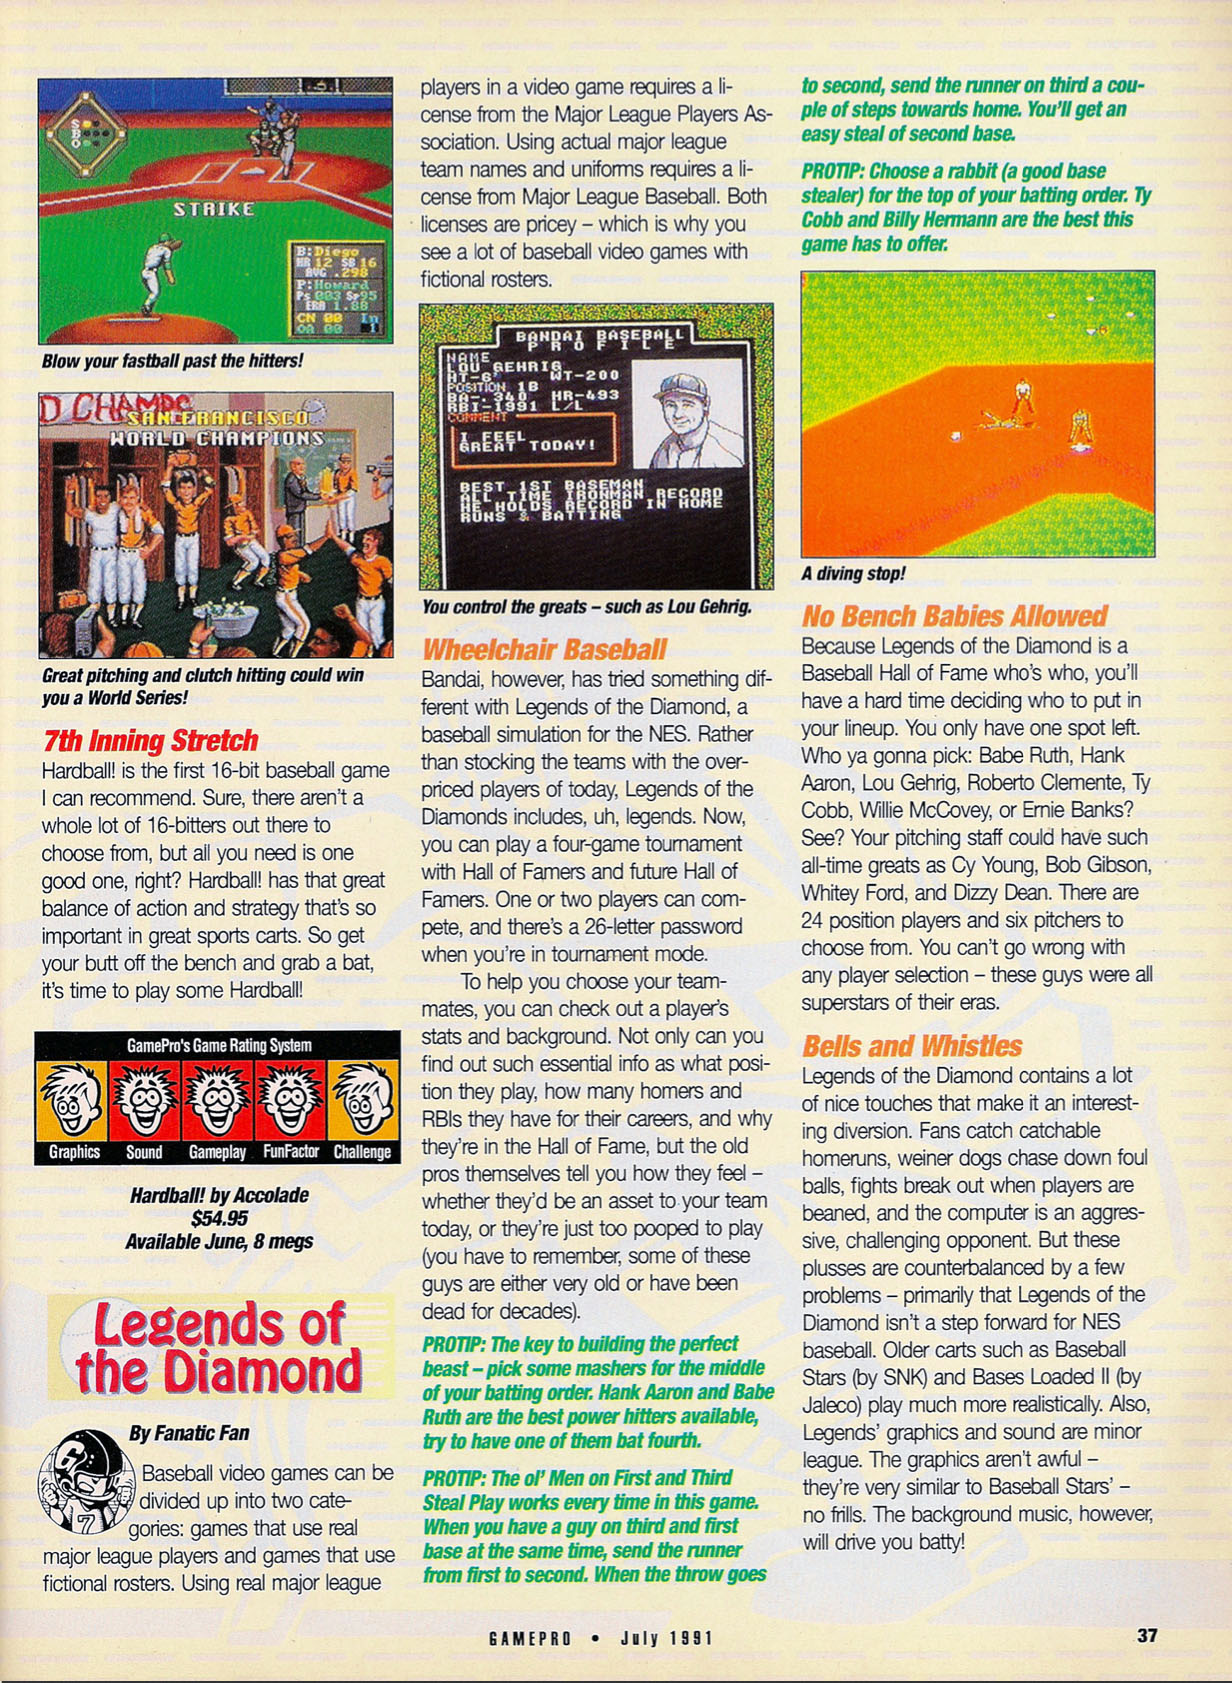 Baseball Blowout, GamePro July 1991 page 37